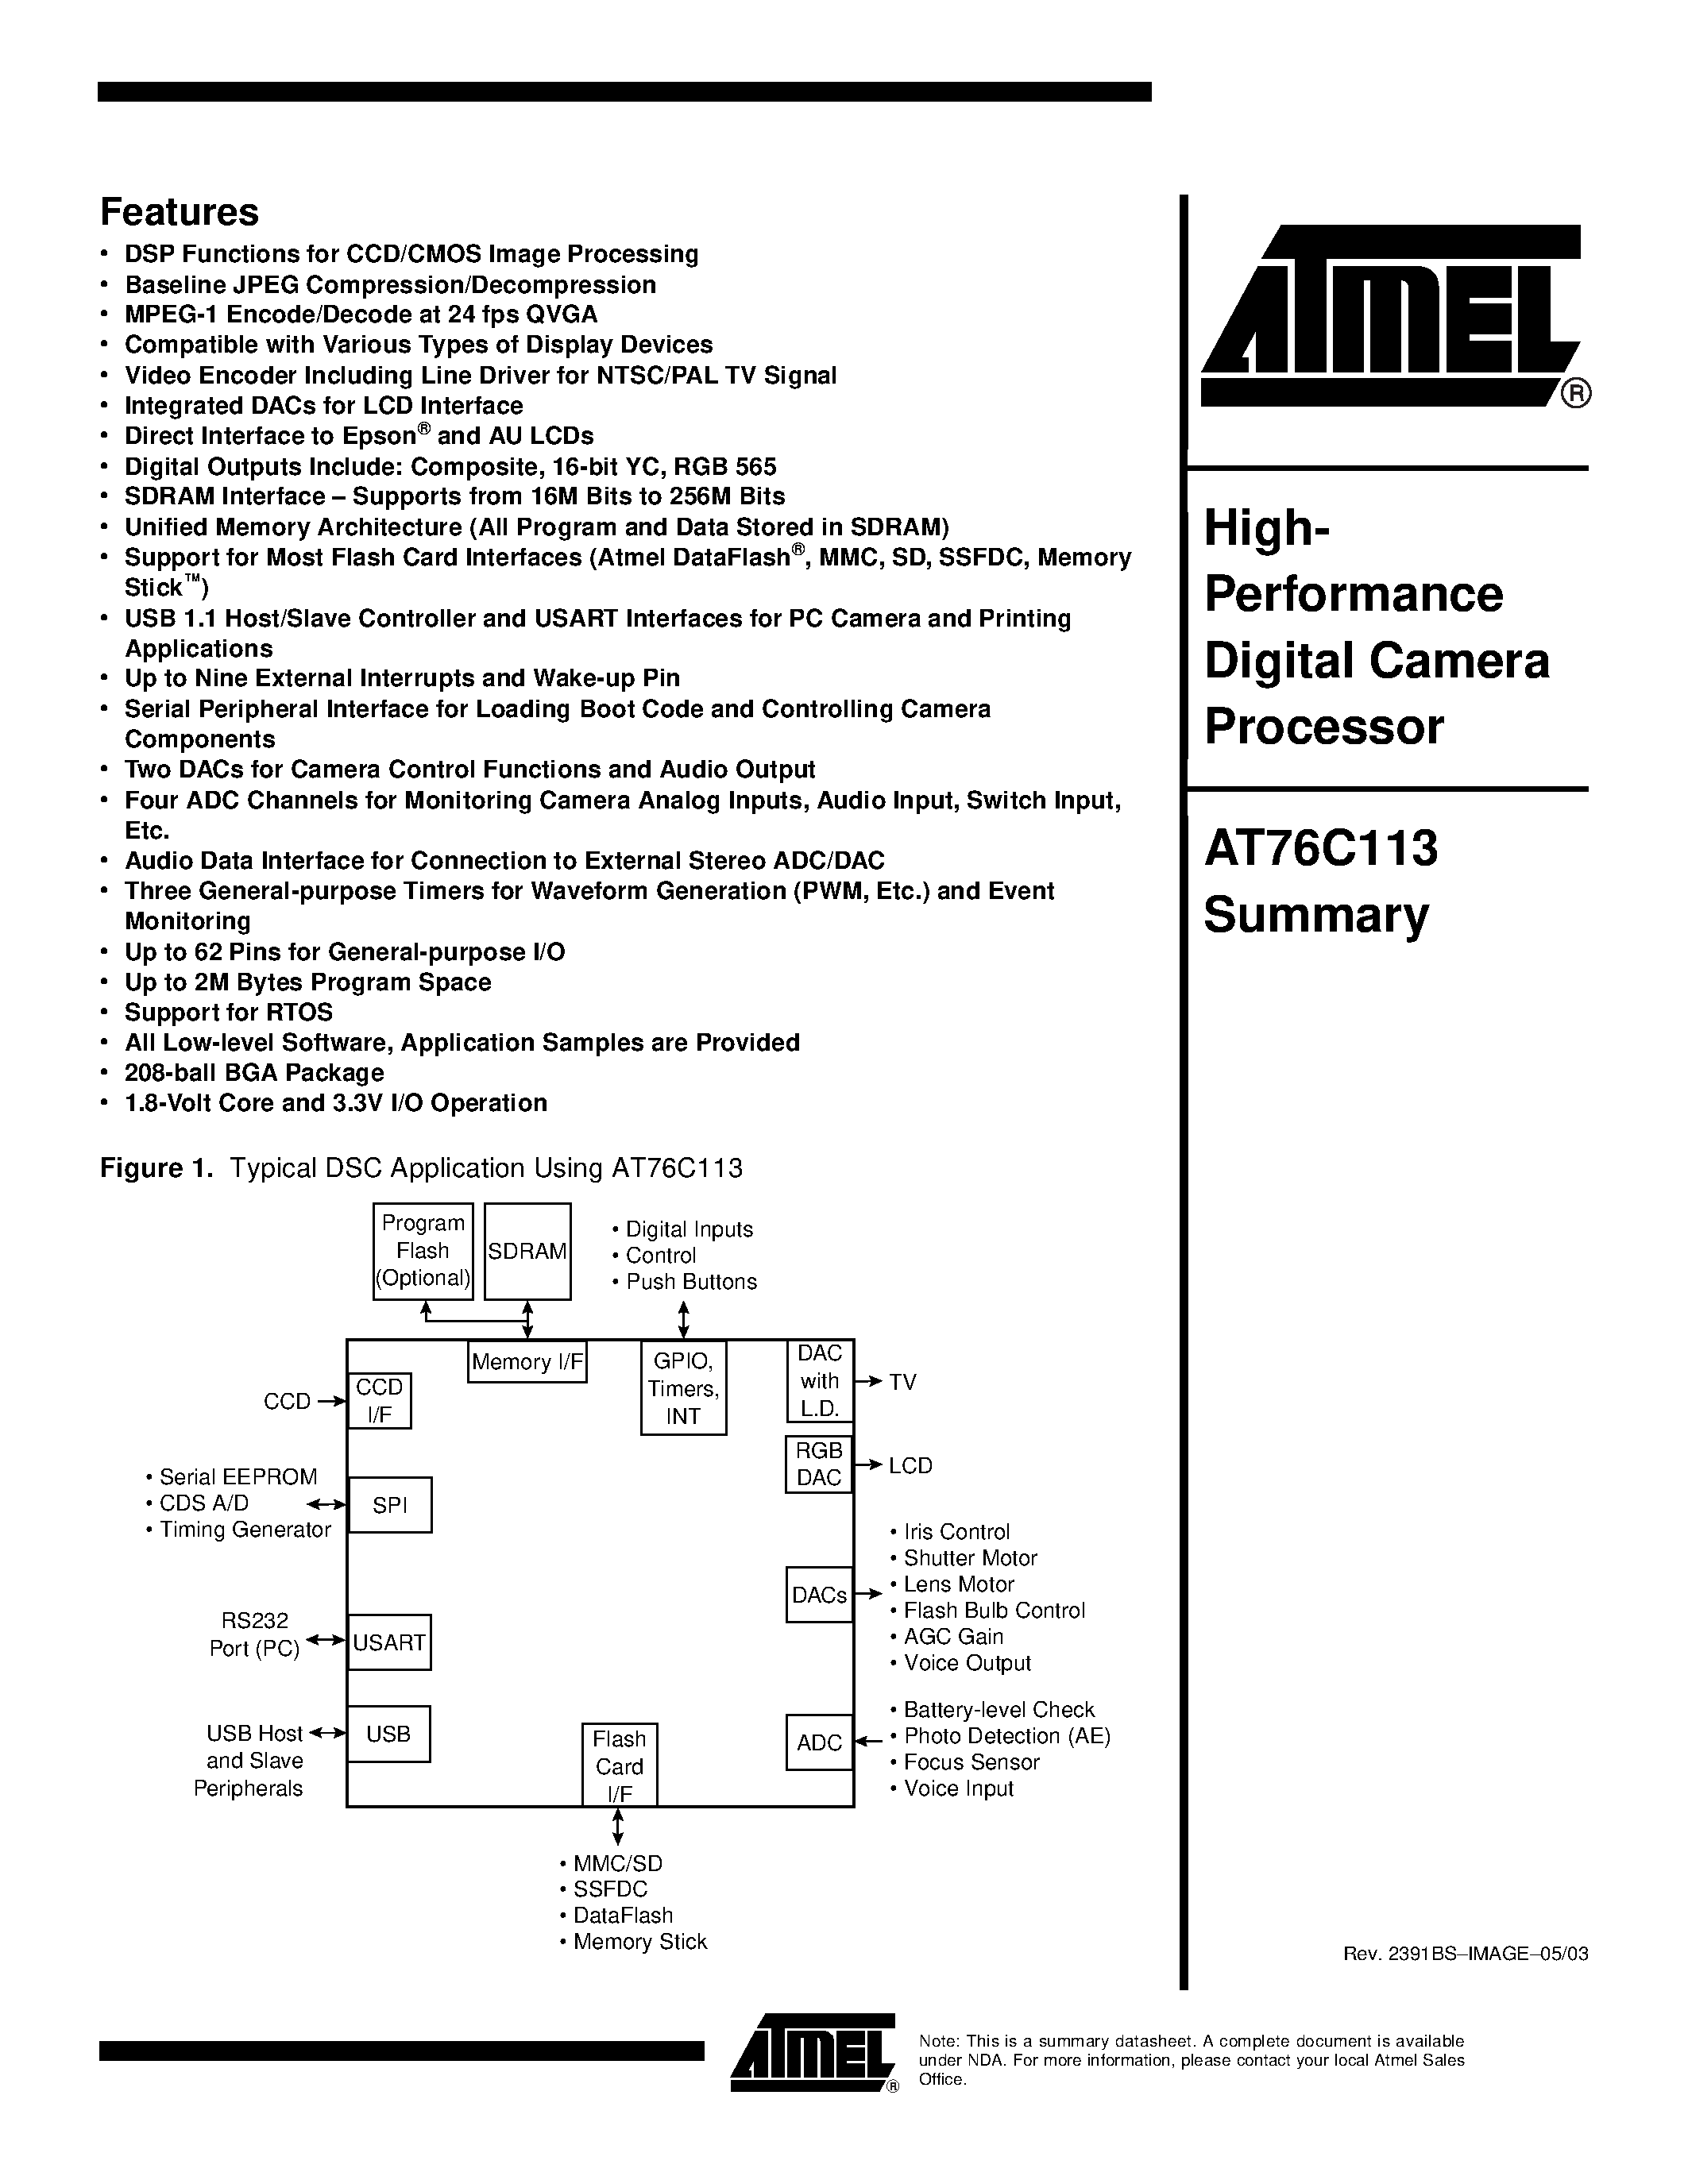 Даташит AT76C113-U - High- Performance Digital Camera Processor страница 1